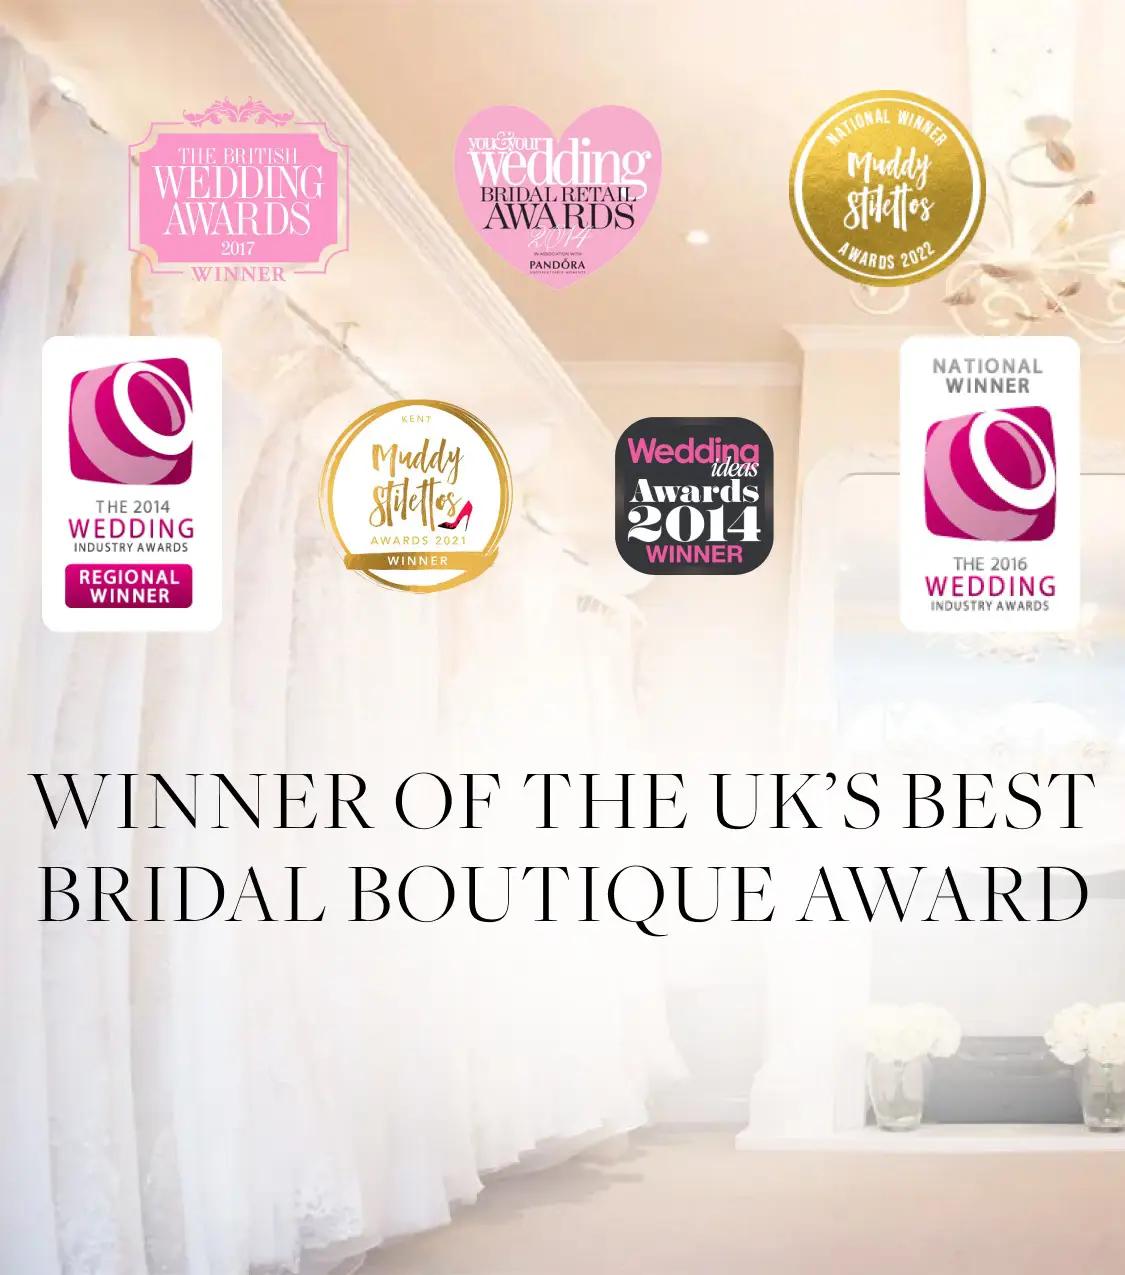 Isabella Grace winner of UK's Best Bridal Boutique Award